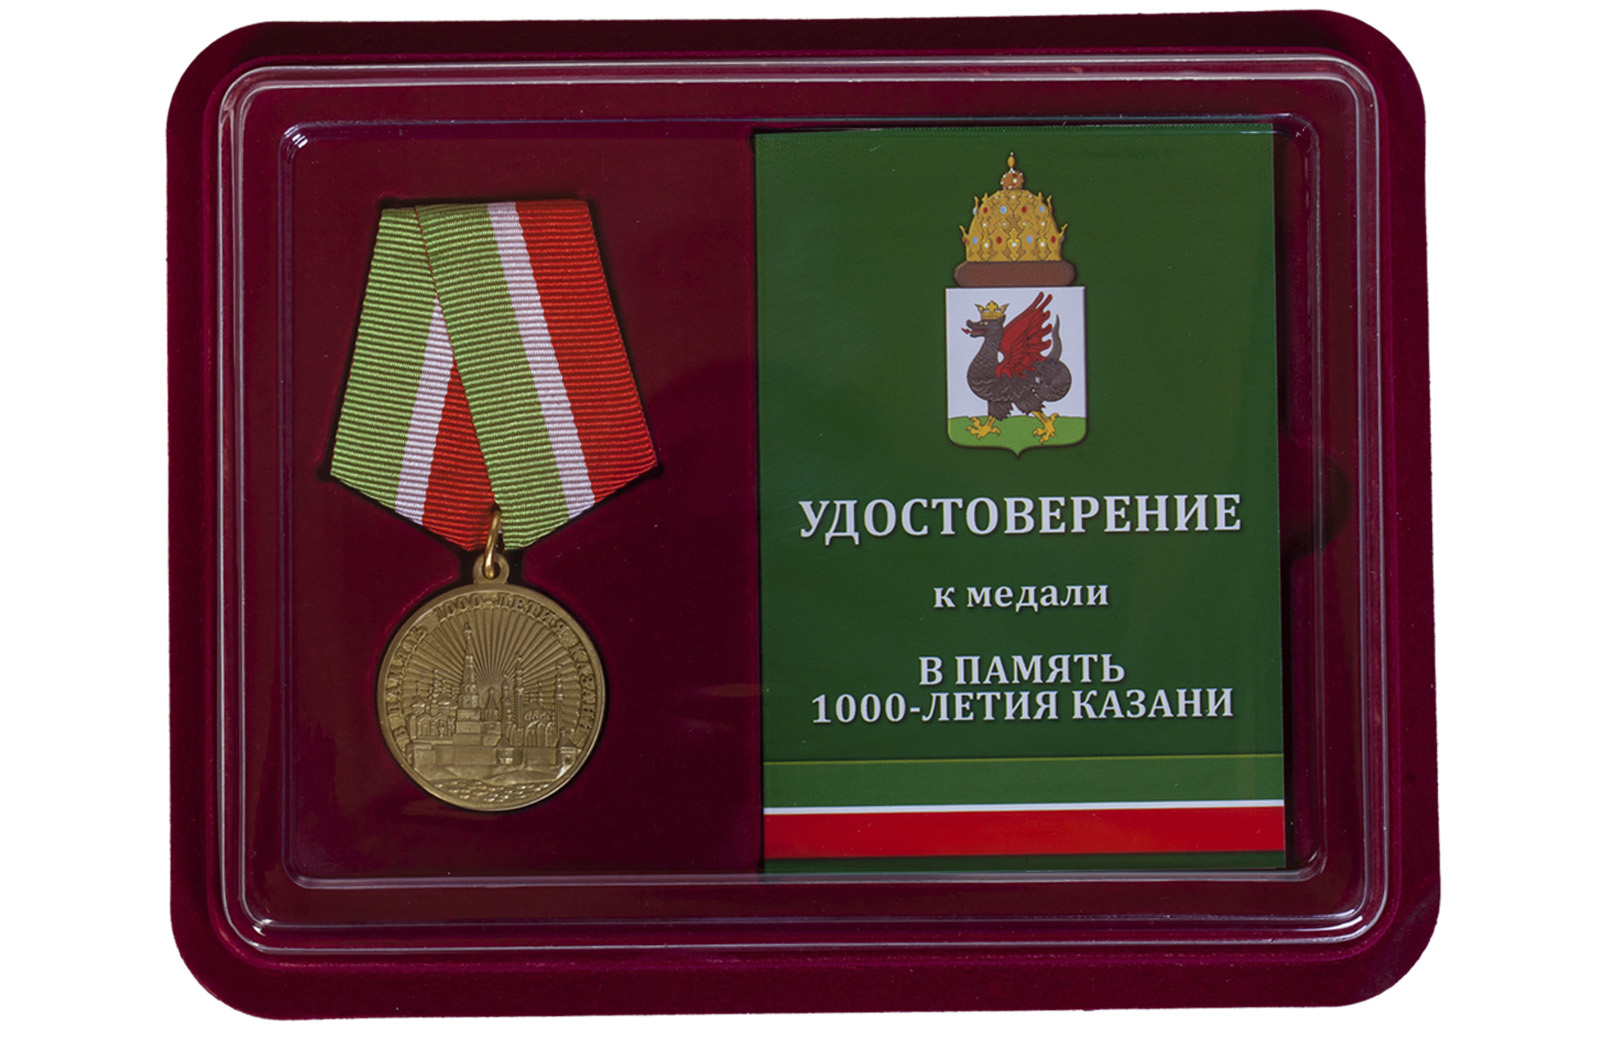 Купить юбилейную медаль В память 1000-летия Казани с доставкой в ваш город